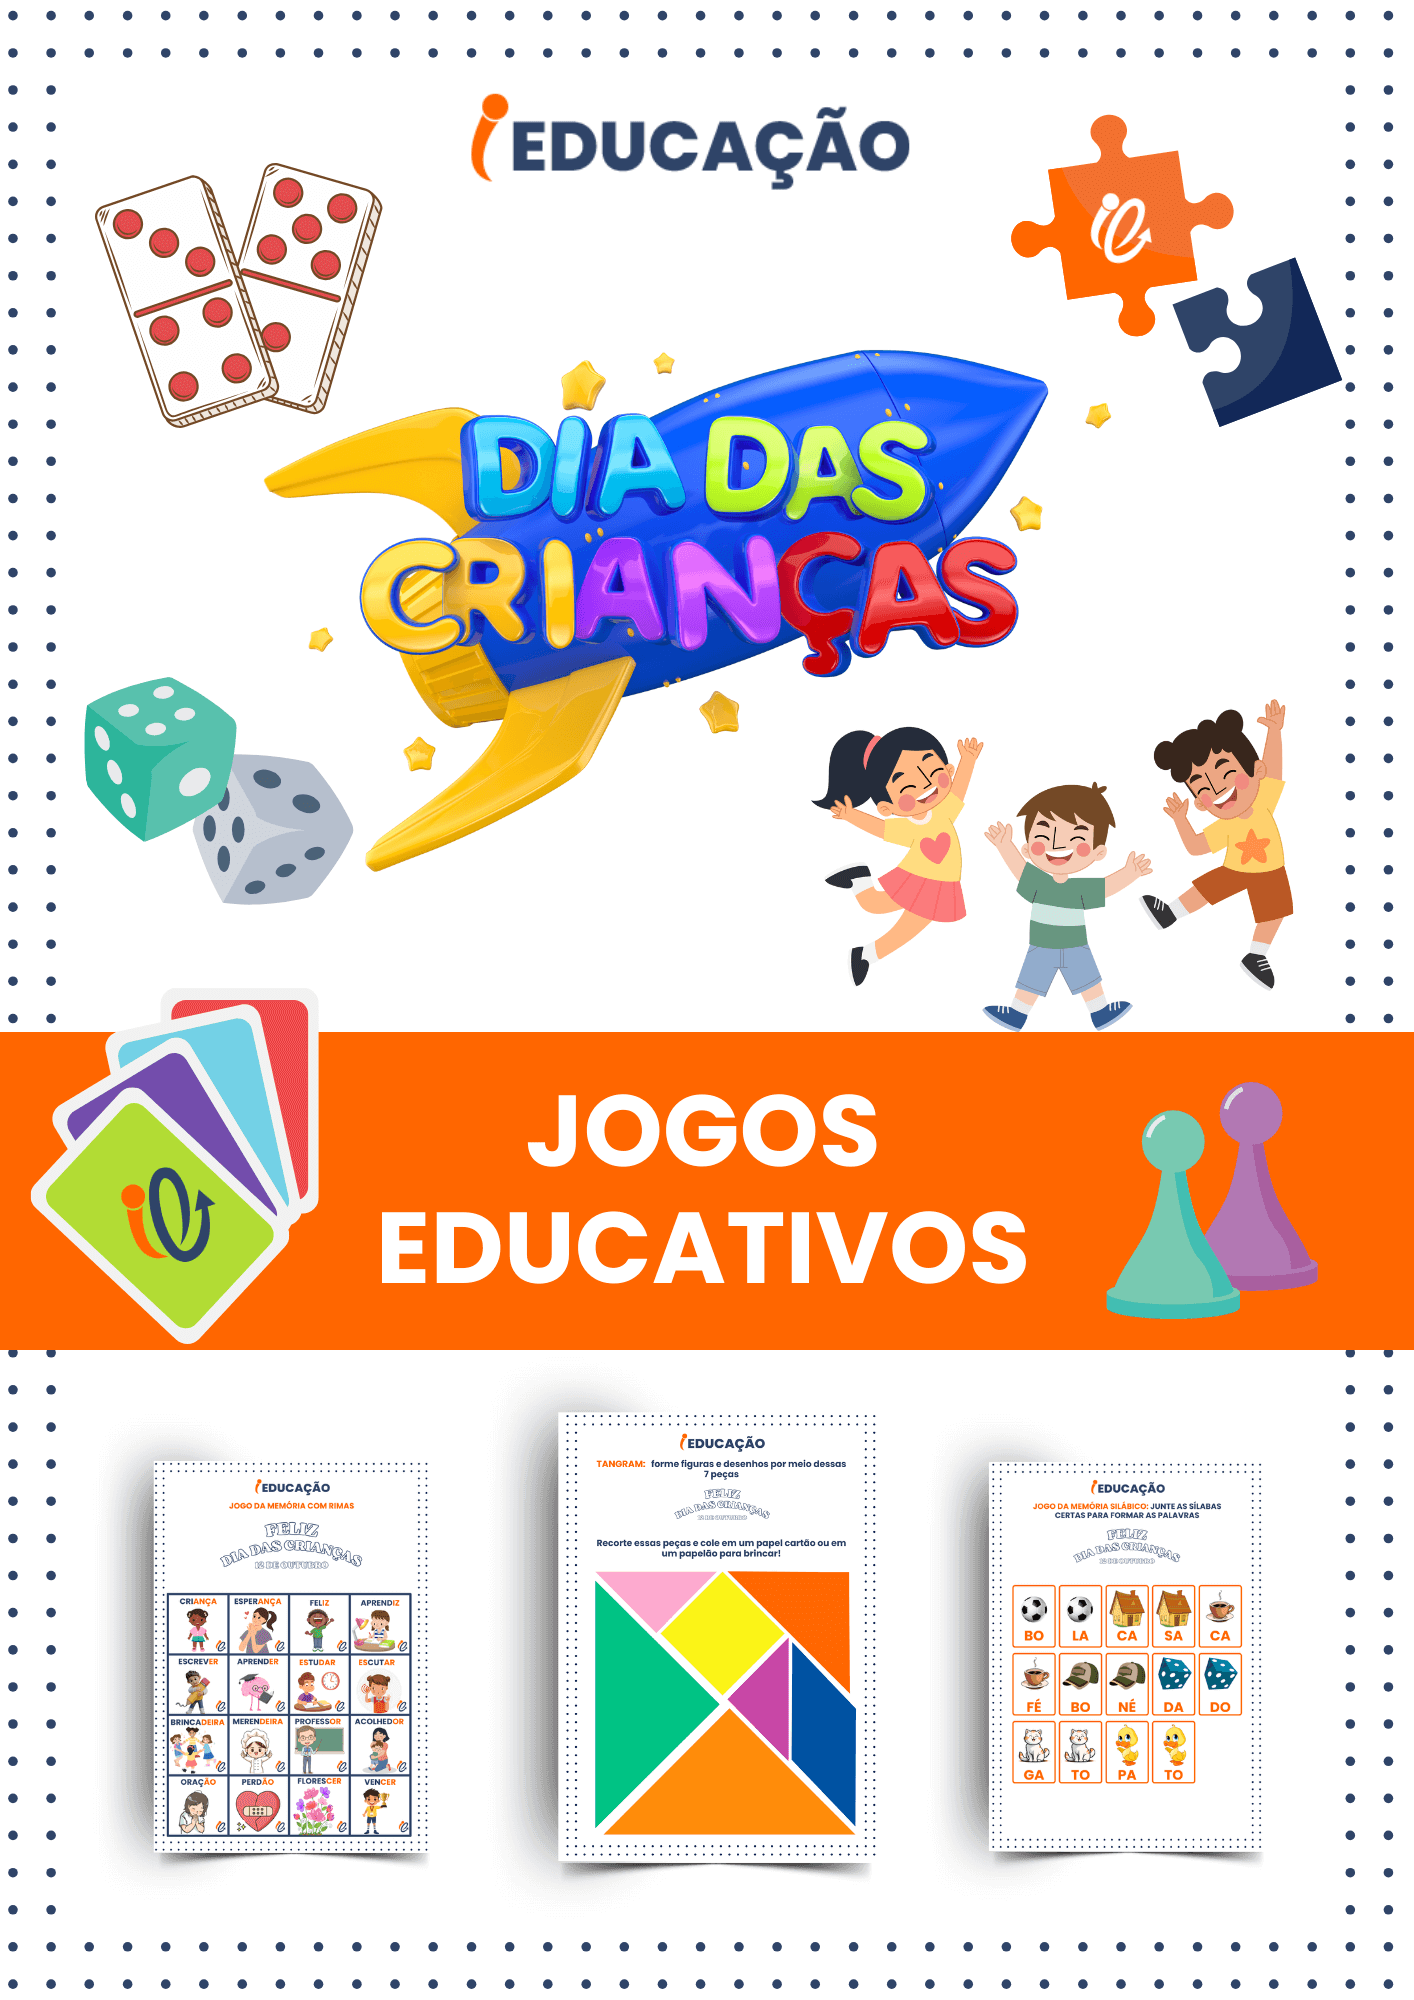 Jogos Educativos para o Dia das Crianças - iEducação